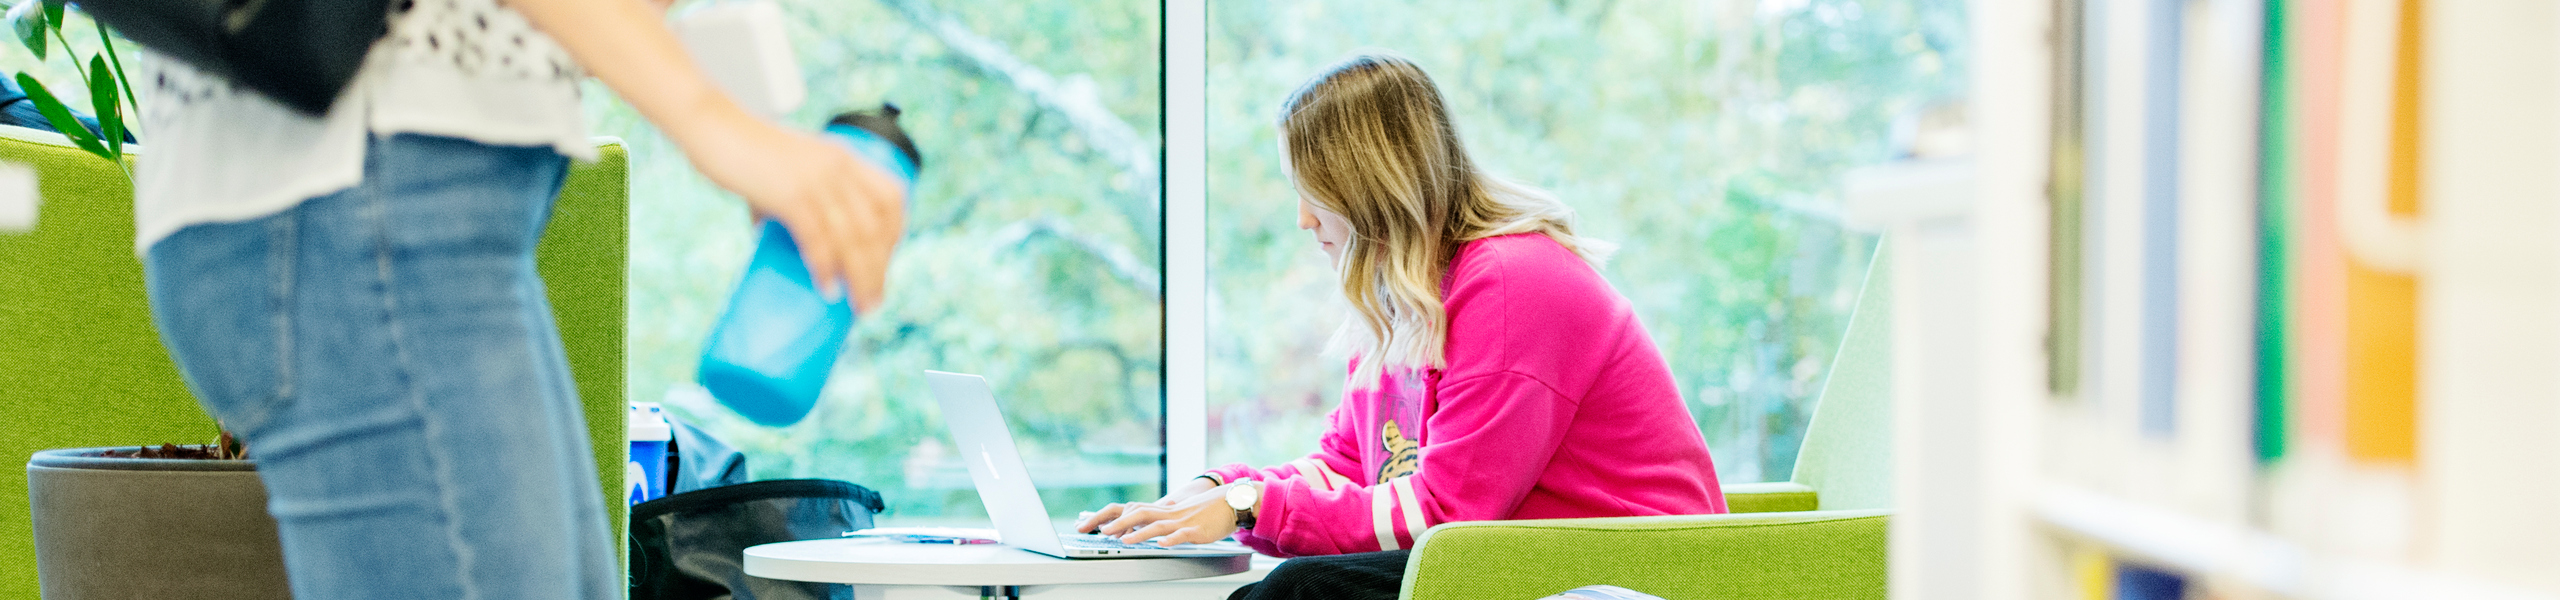 Kvinnlig student sitter vid dator i GIH:s bibliotek